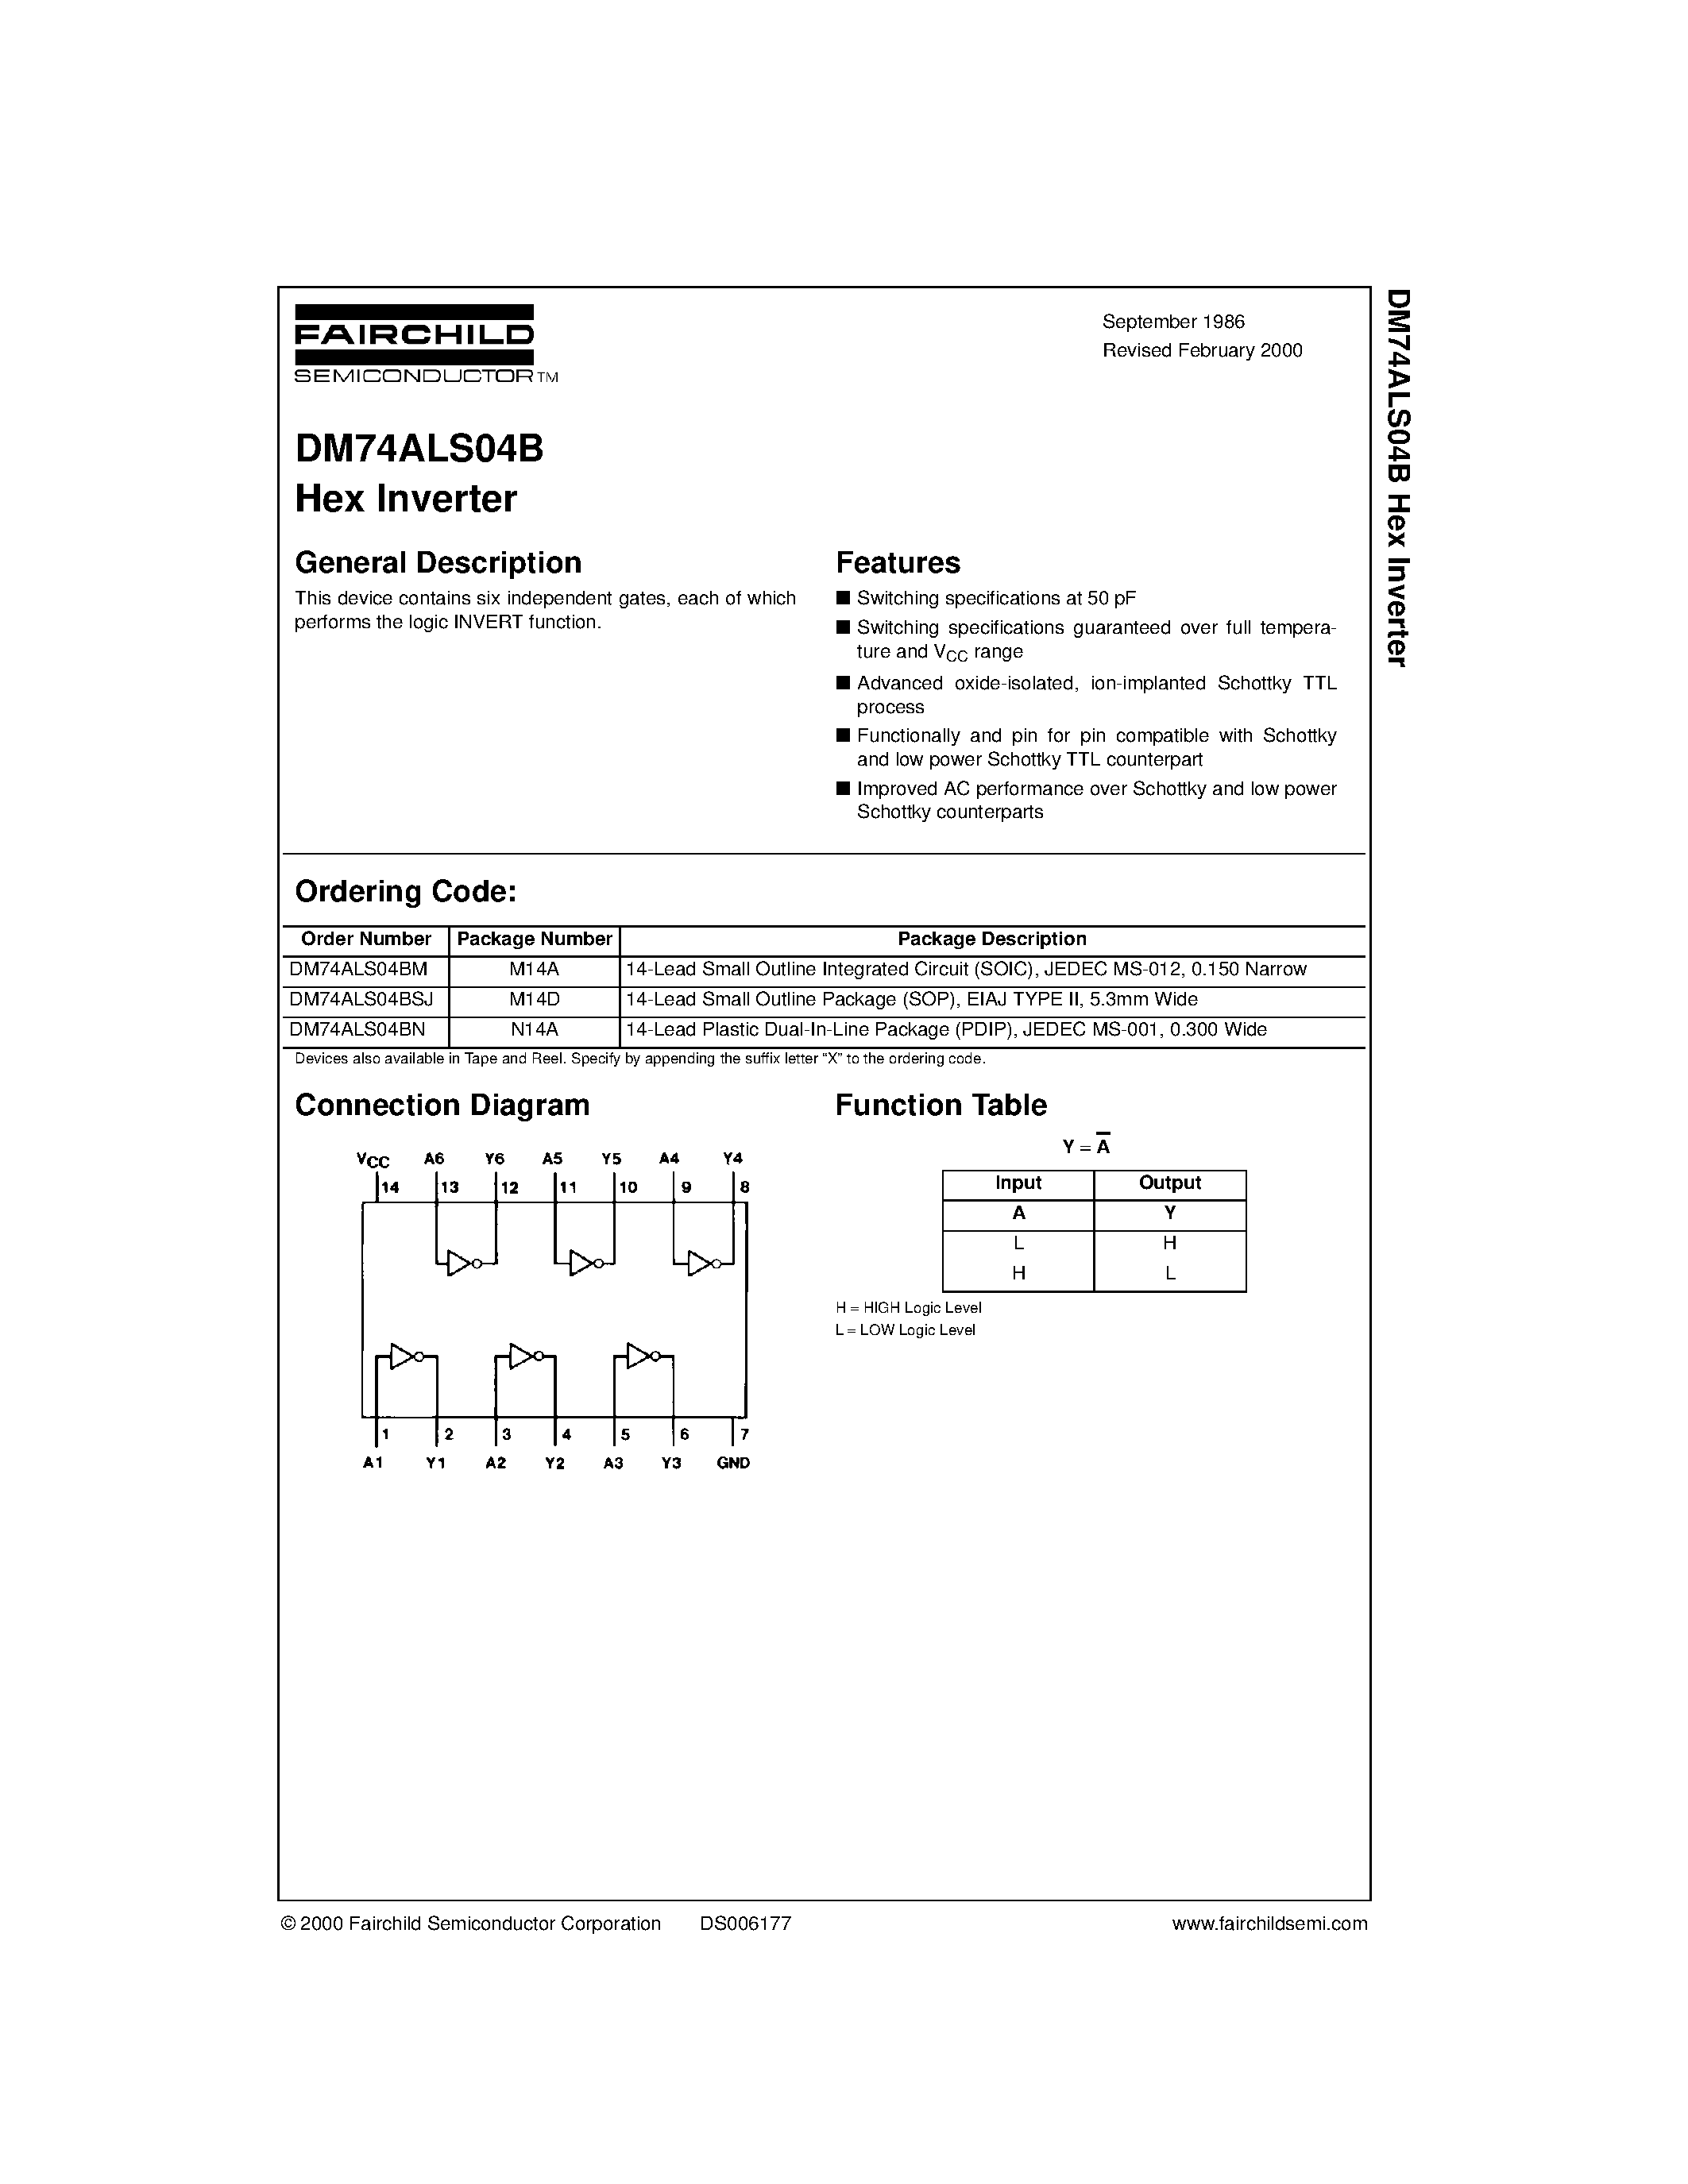 Datasheet DM74ALS04BM - Hex Inverter page 1